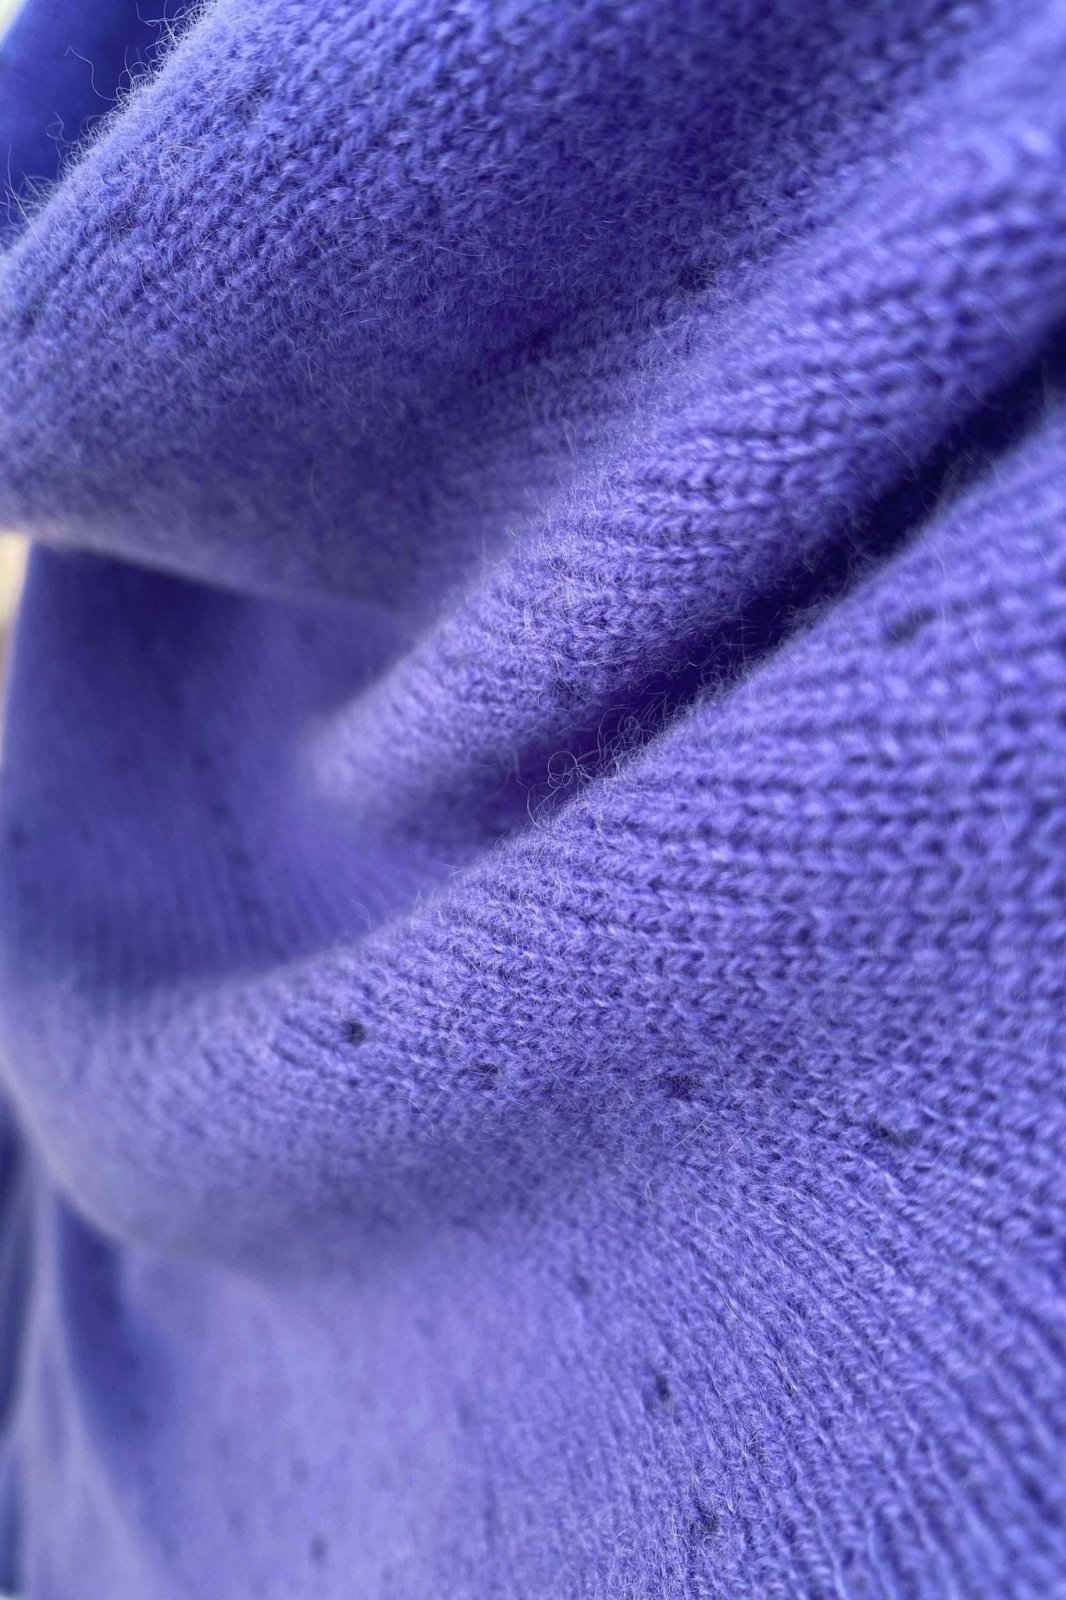 Blue purple Lacy Multiway cashmere poncho - SEMON Cashmere